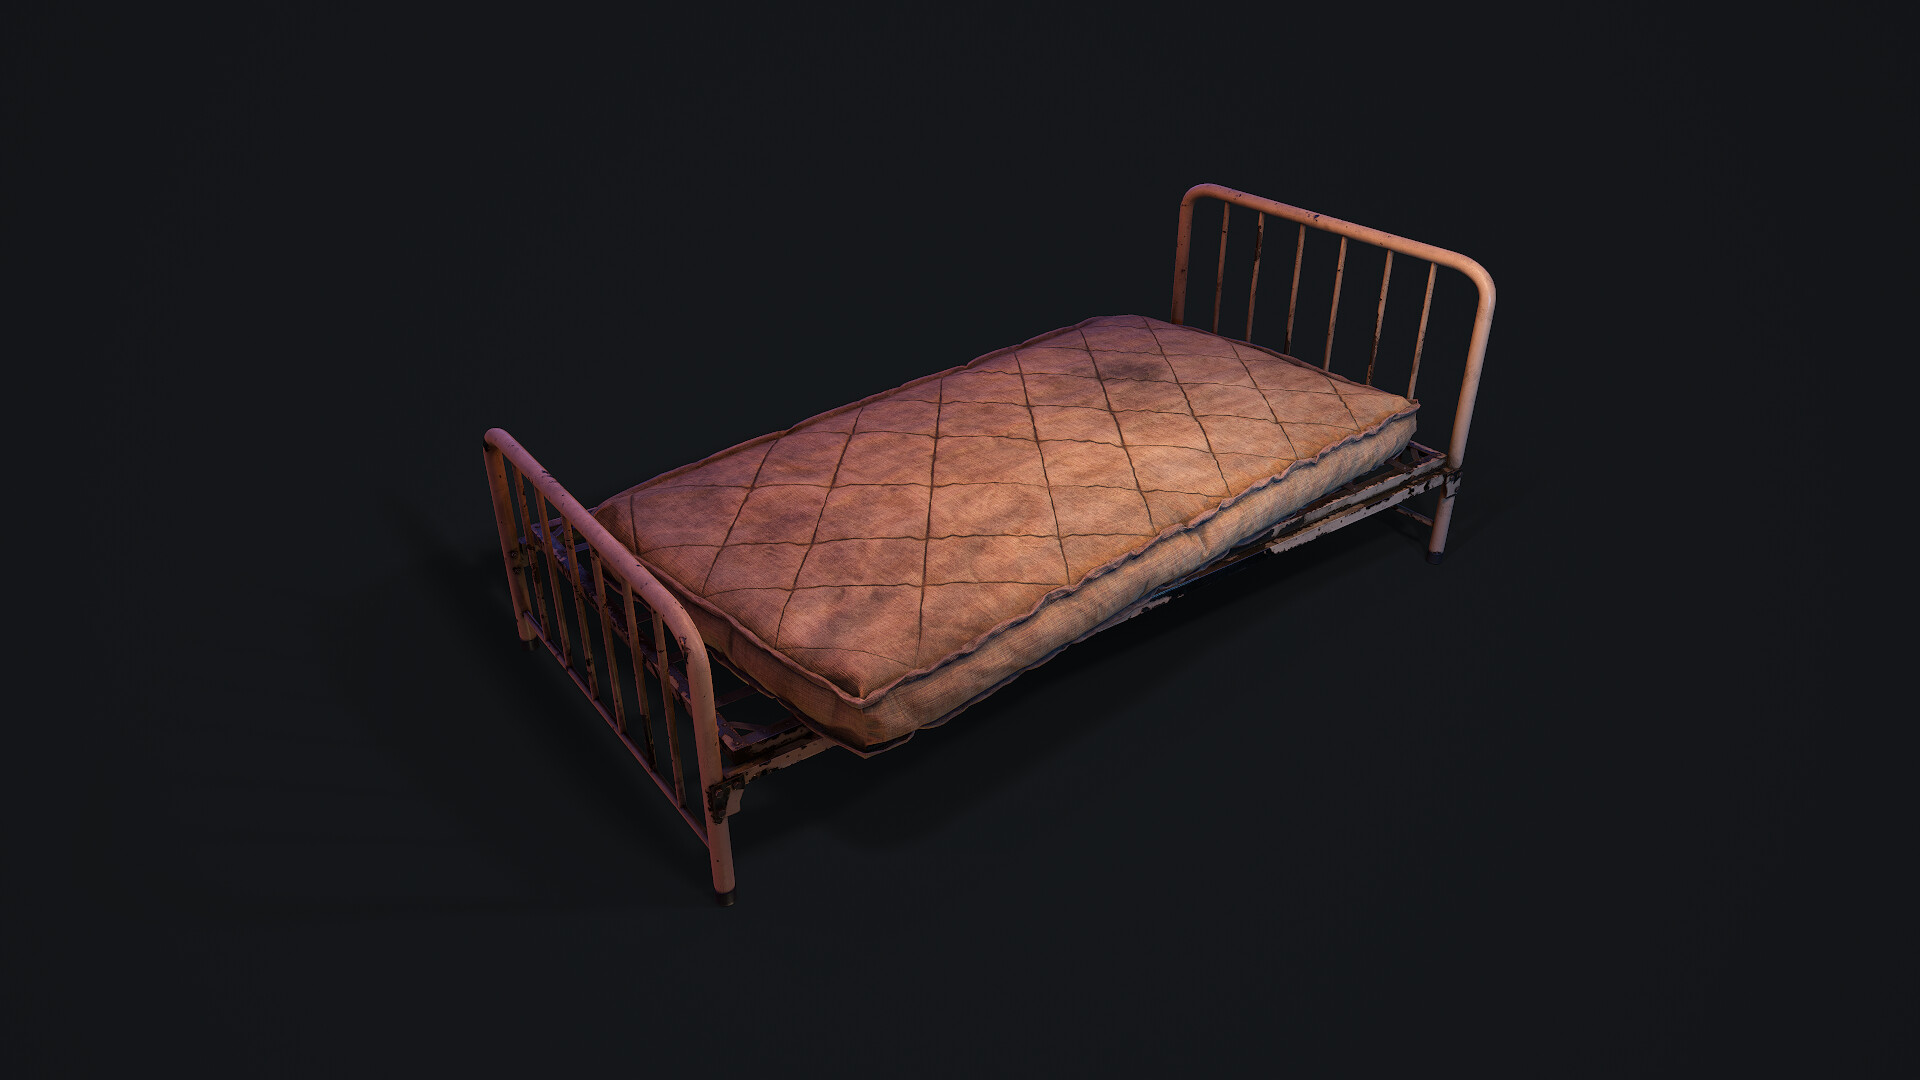 ArtStation - Bed Frame